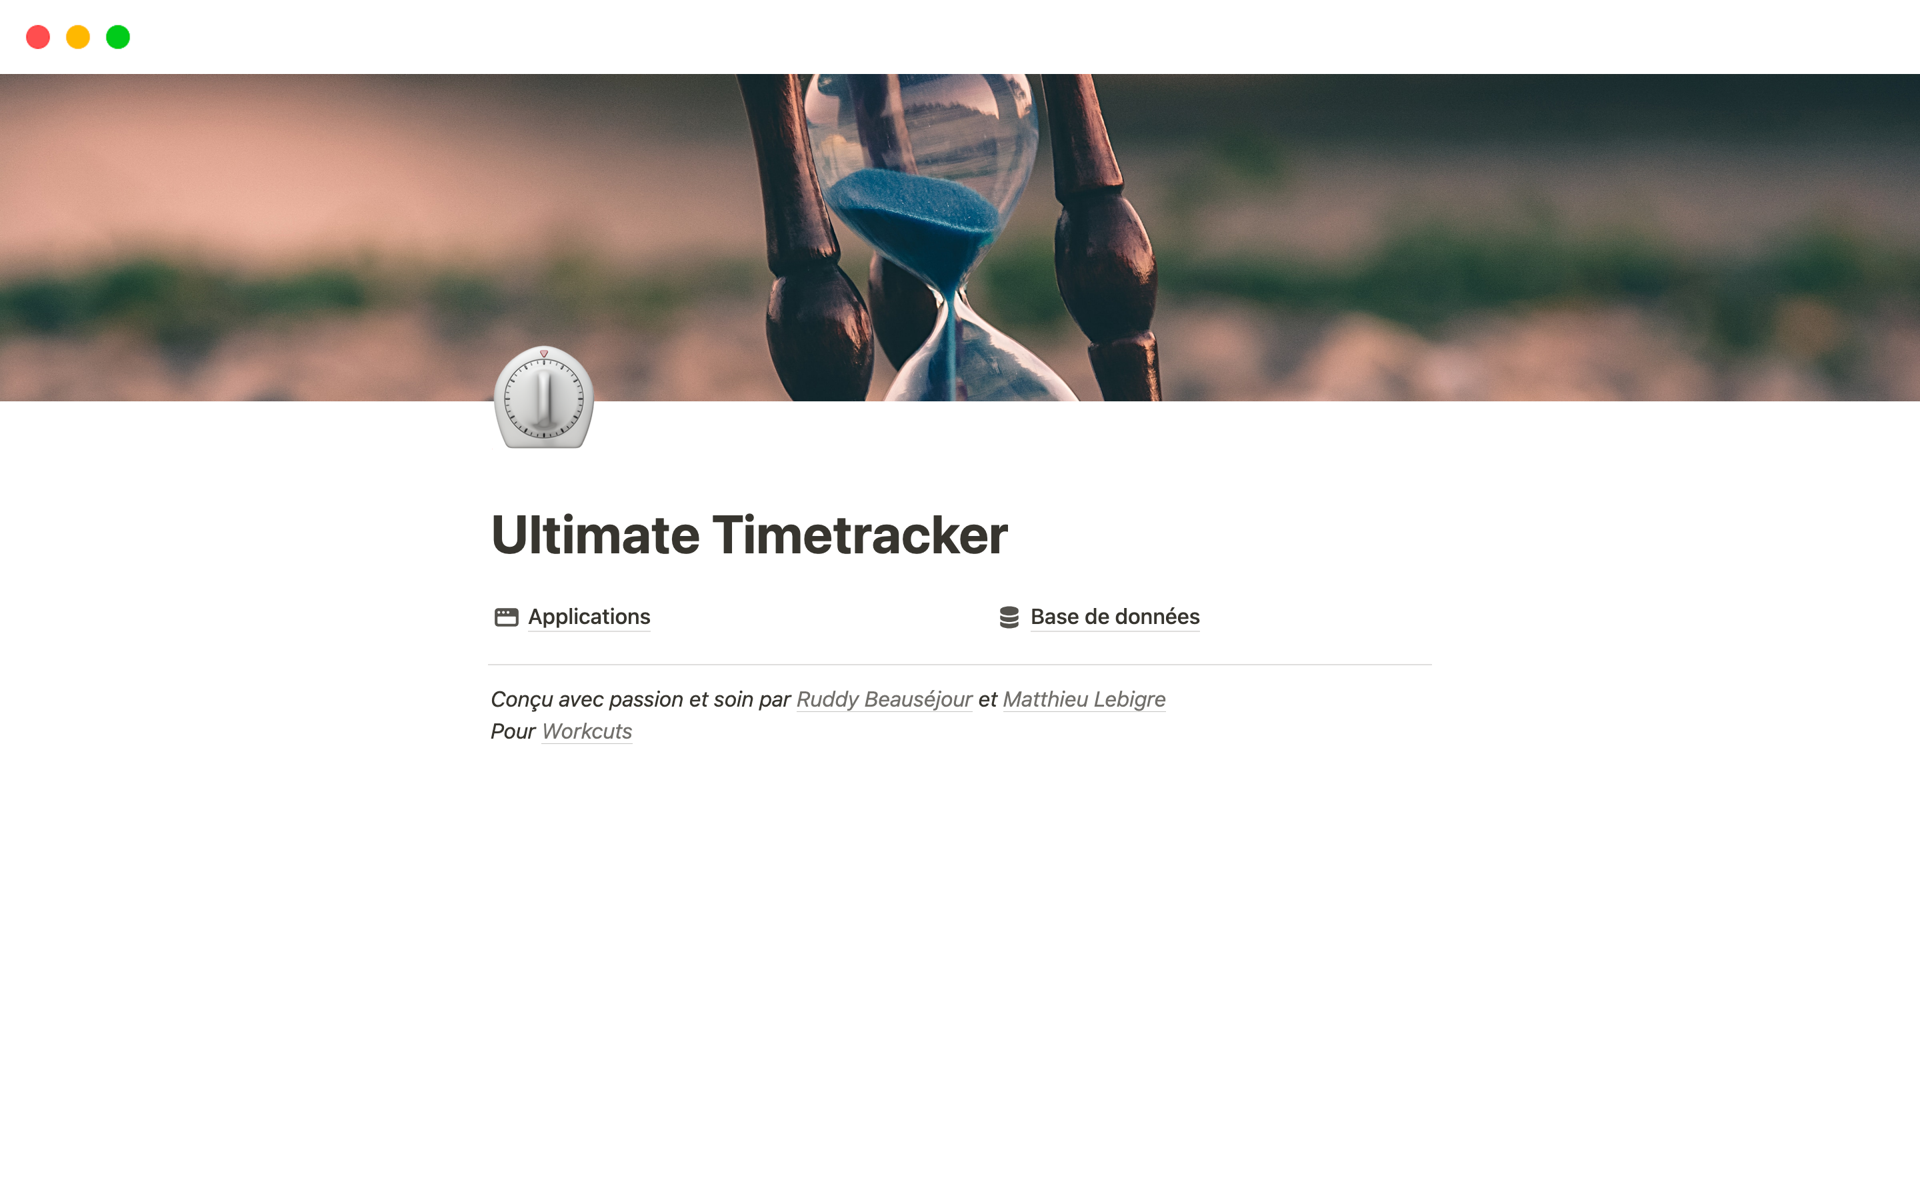 Vista previa de una plantilla para Ultimate Timetracker